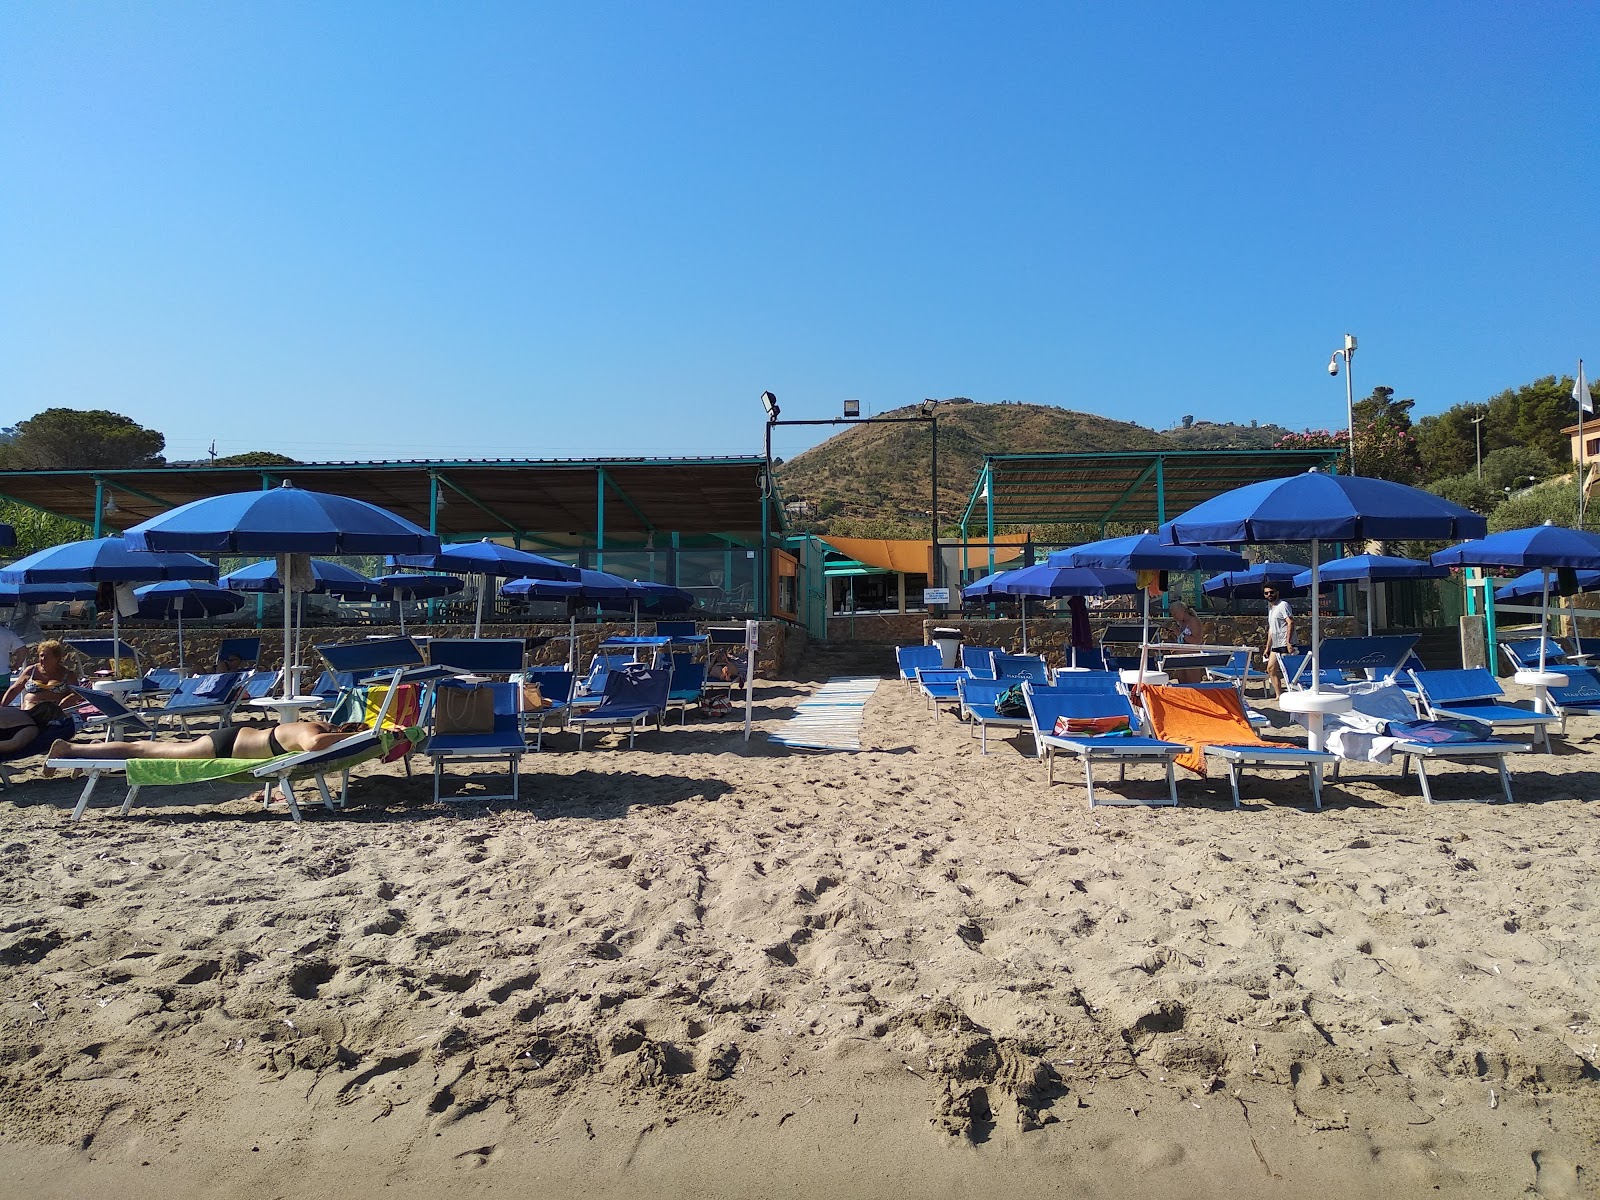 Foto af Spiaggia Di Mazzaforno - populært sted blandt afslapningskendere